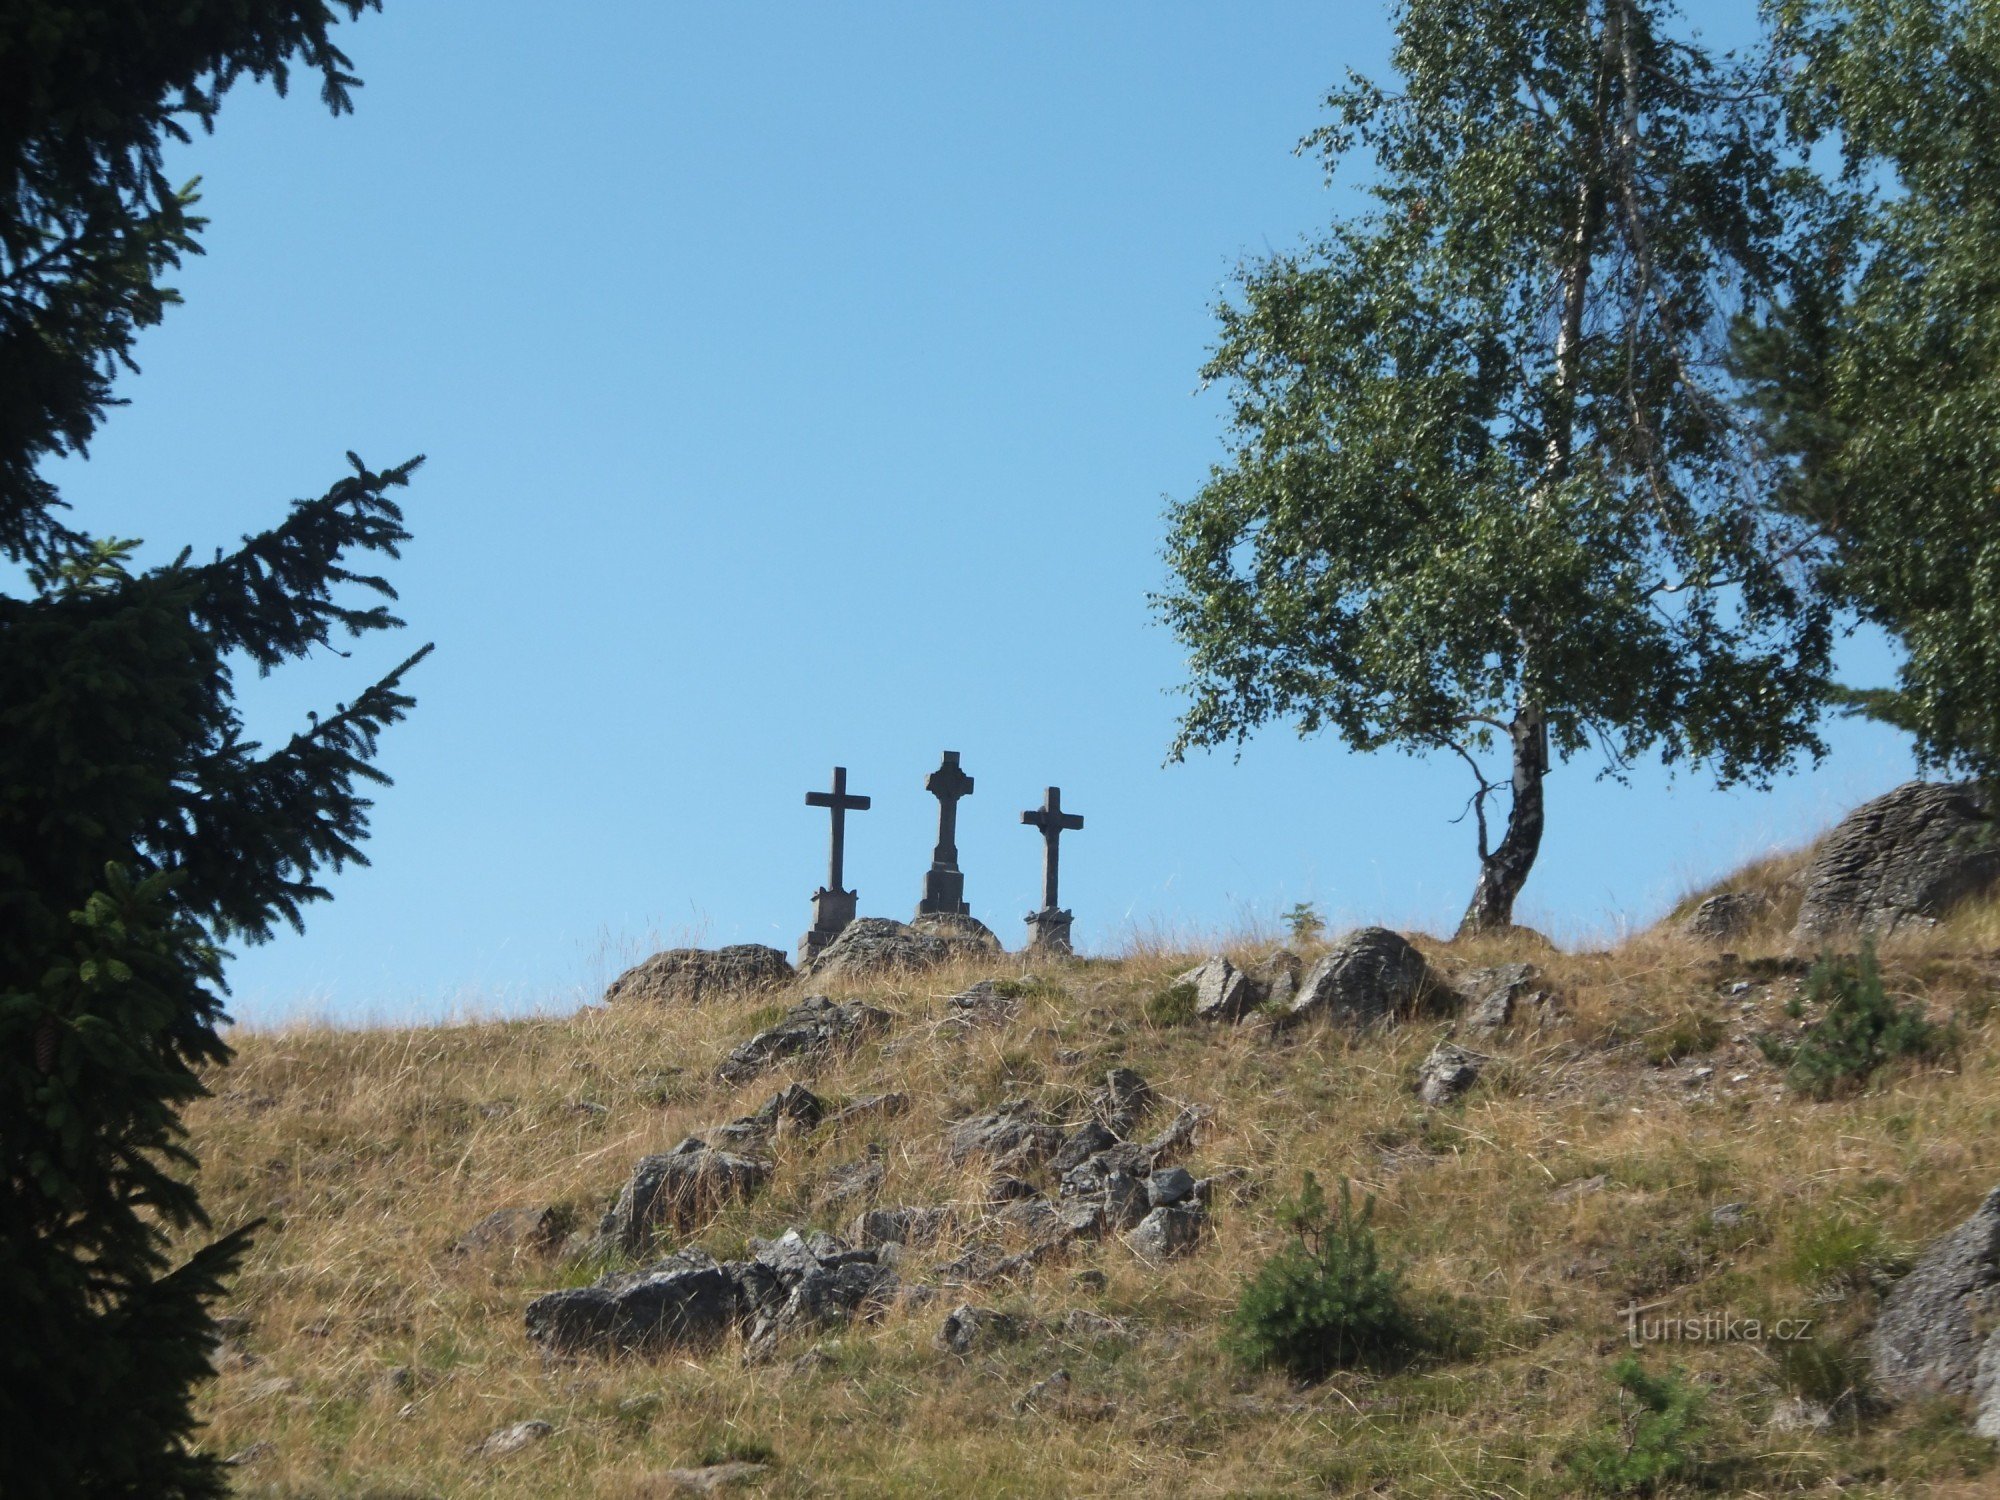 Nová Ves附近的十字架